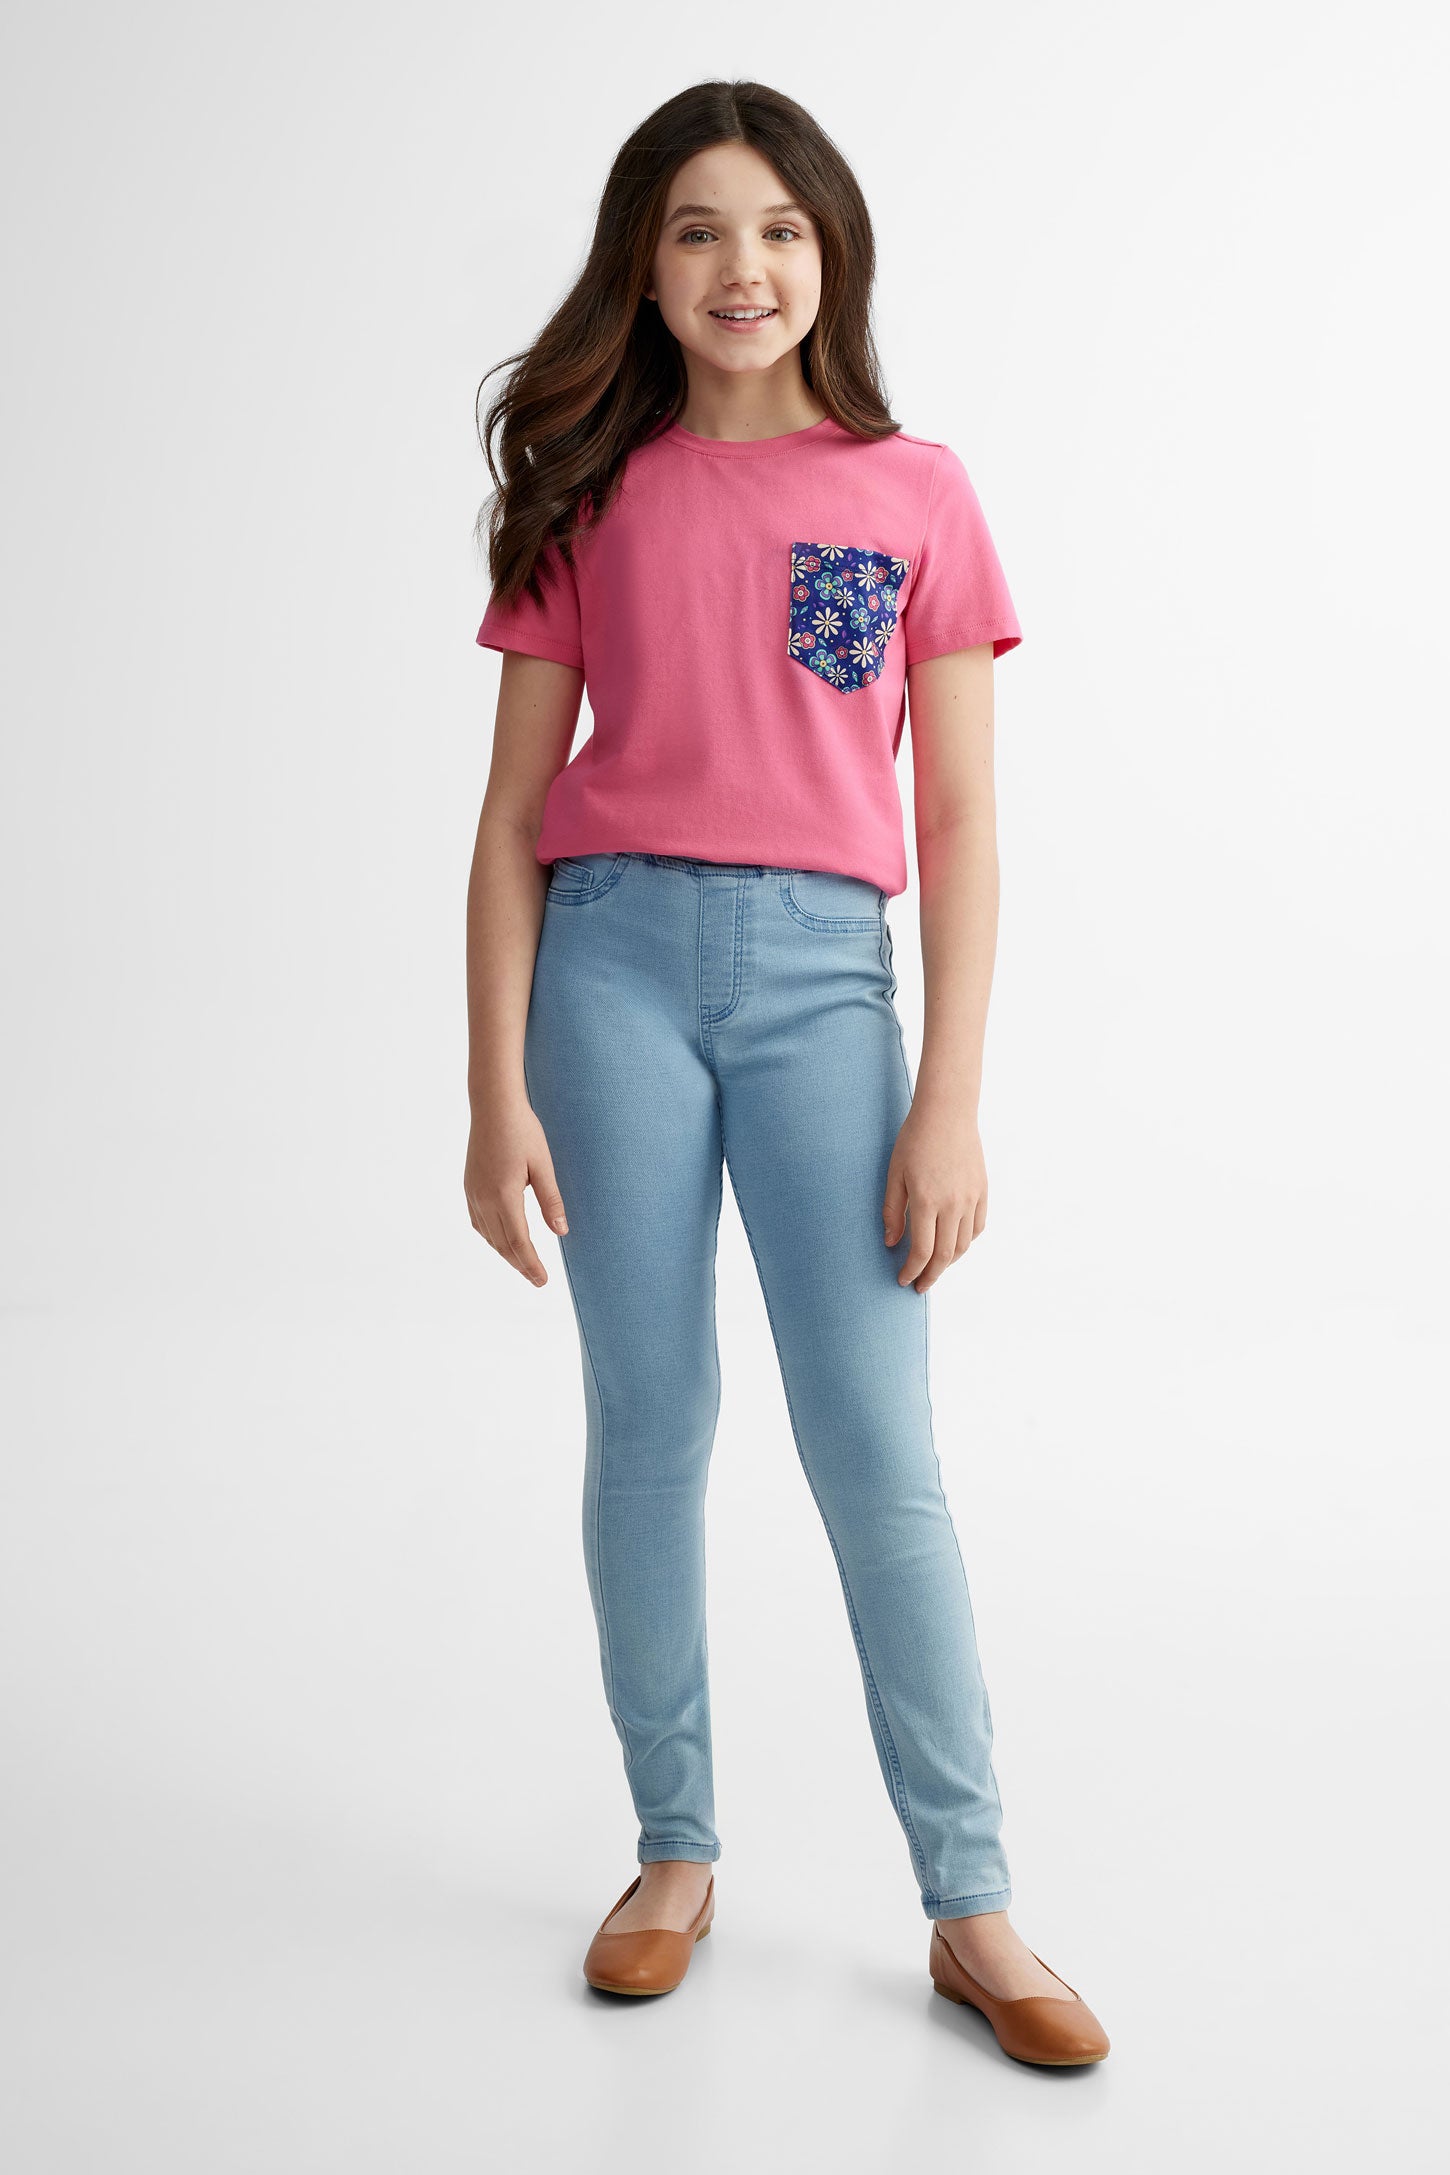 T-shirt col rond à poche en coton, 2/25$ -  Ado fille && ROSE FONCE